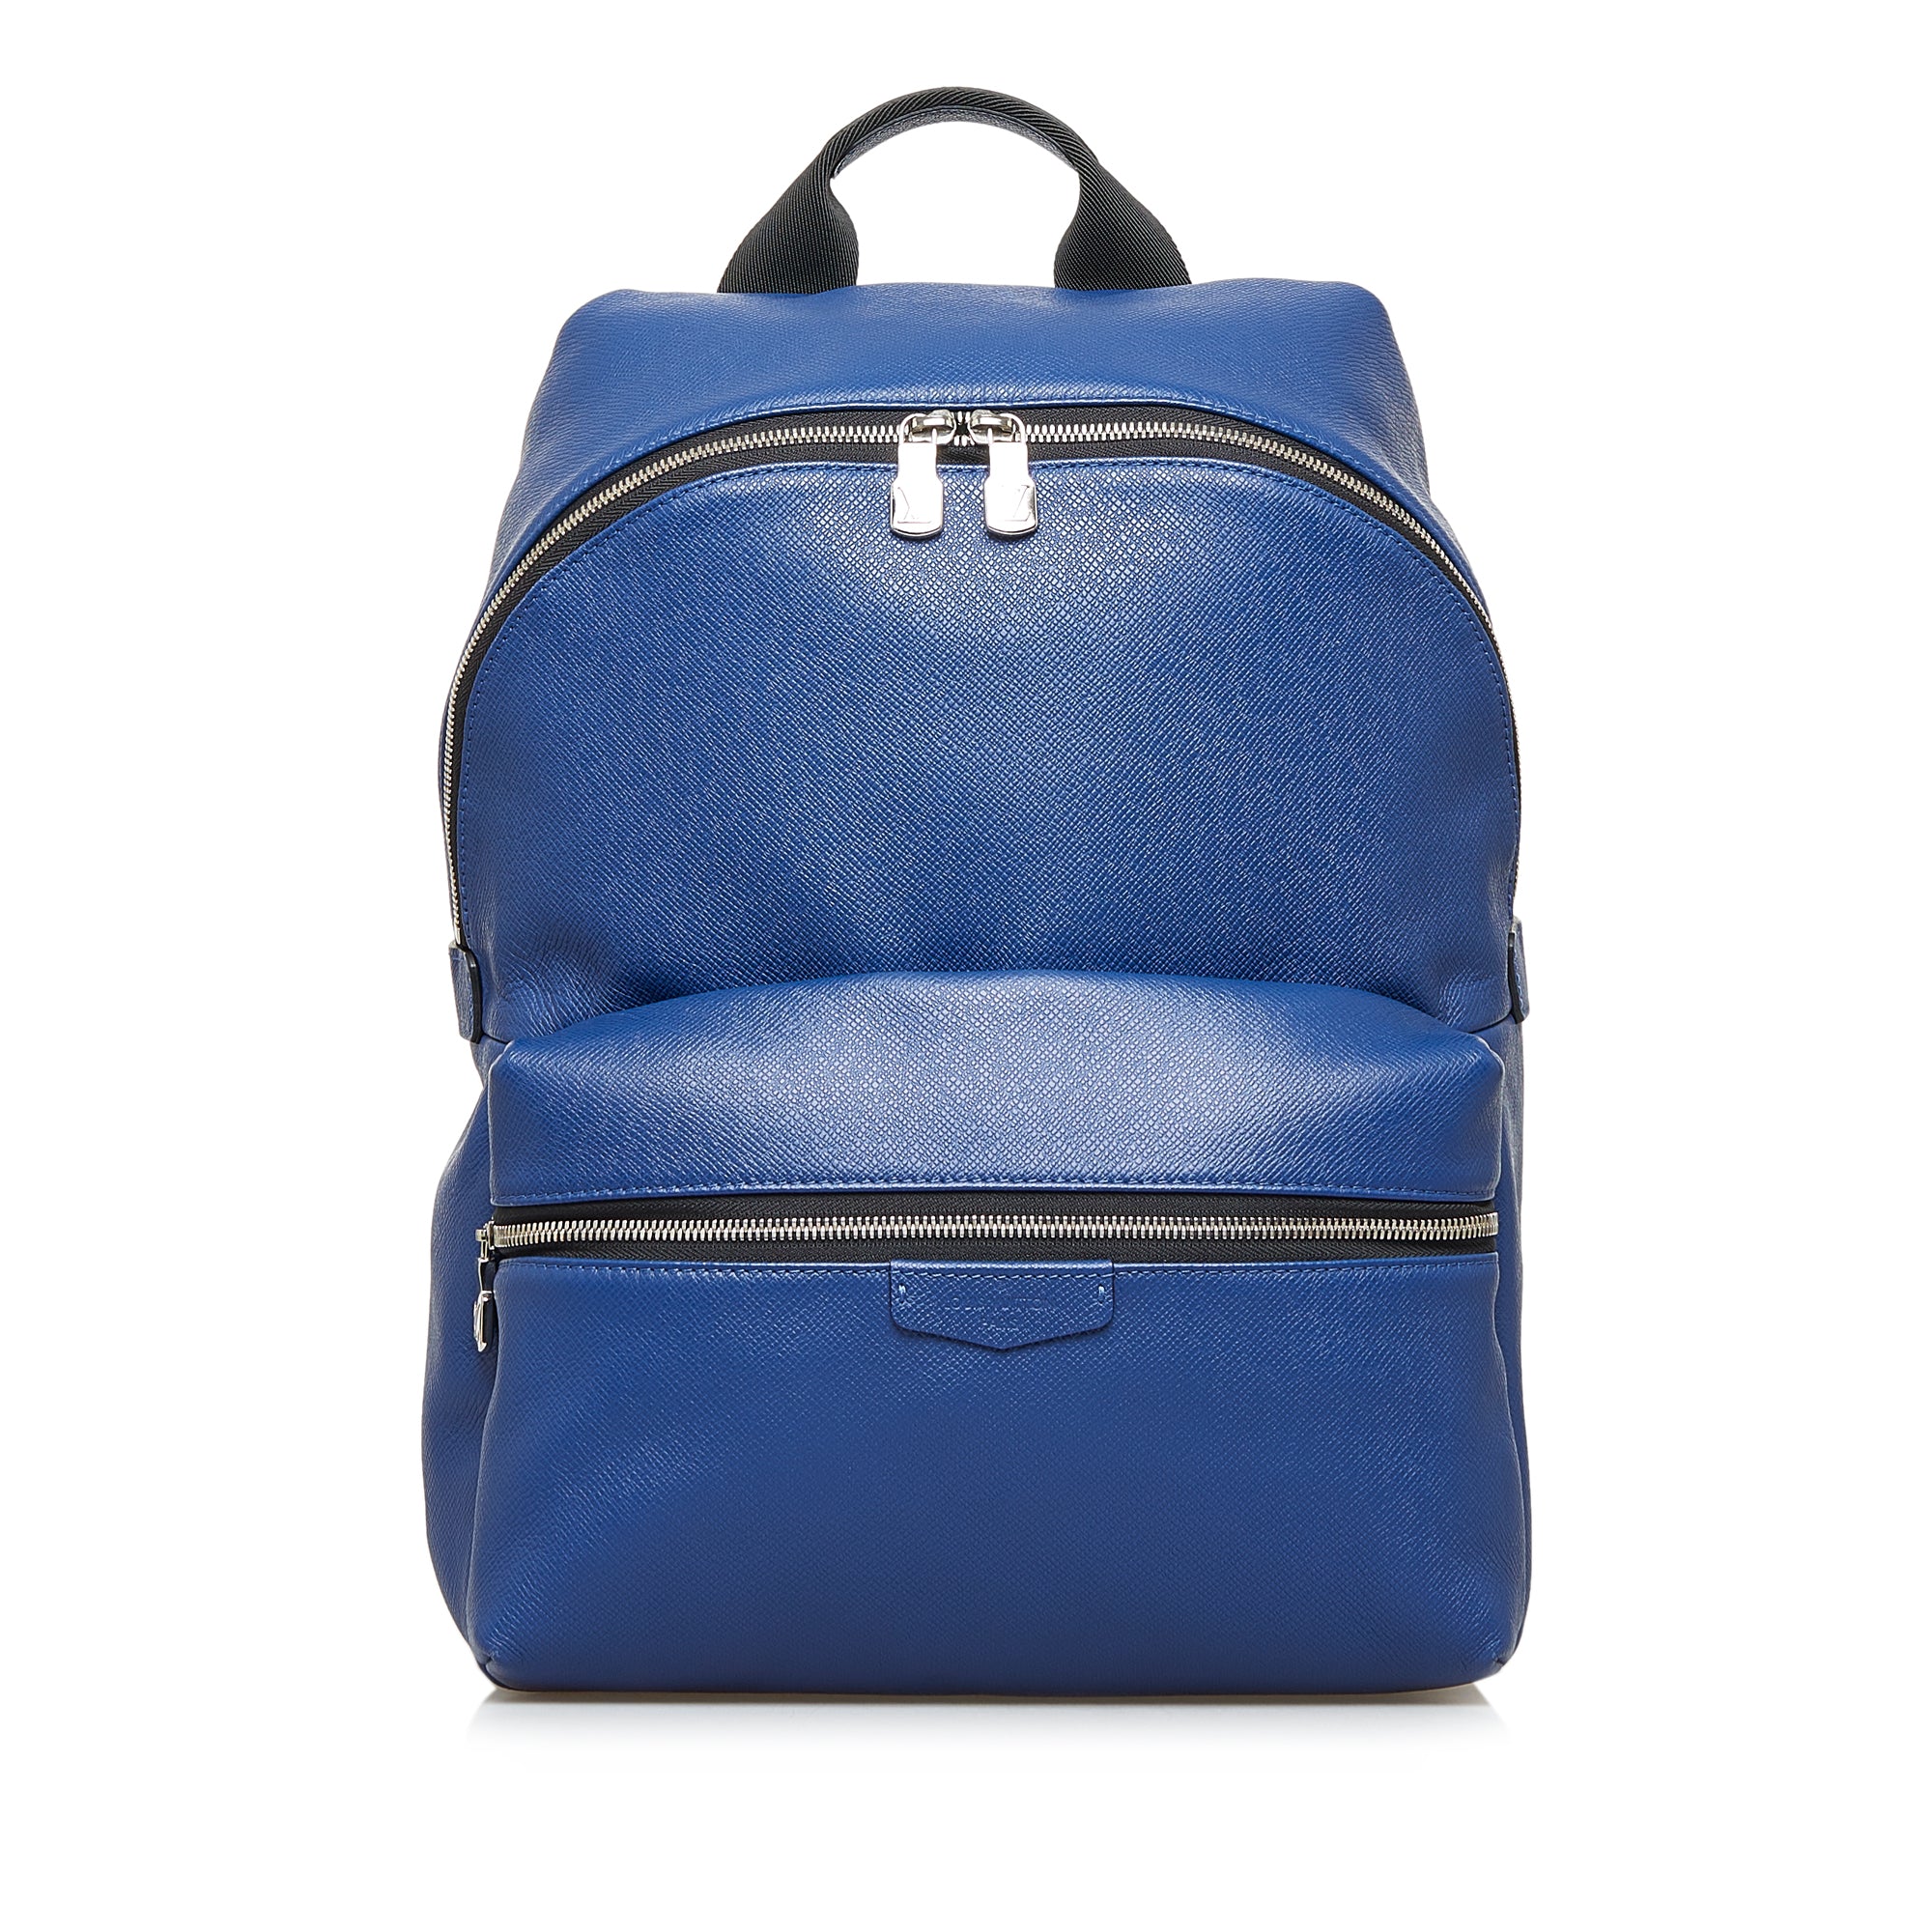 Louis Vuitton Light Blue Leather Articles de Voyage Zippy Wallet